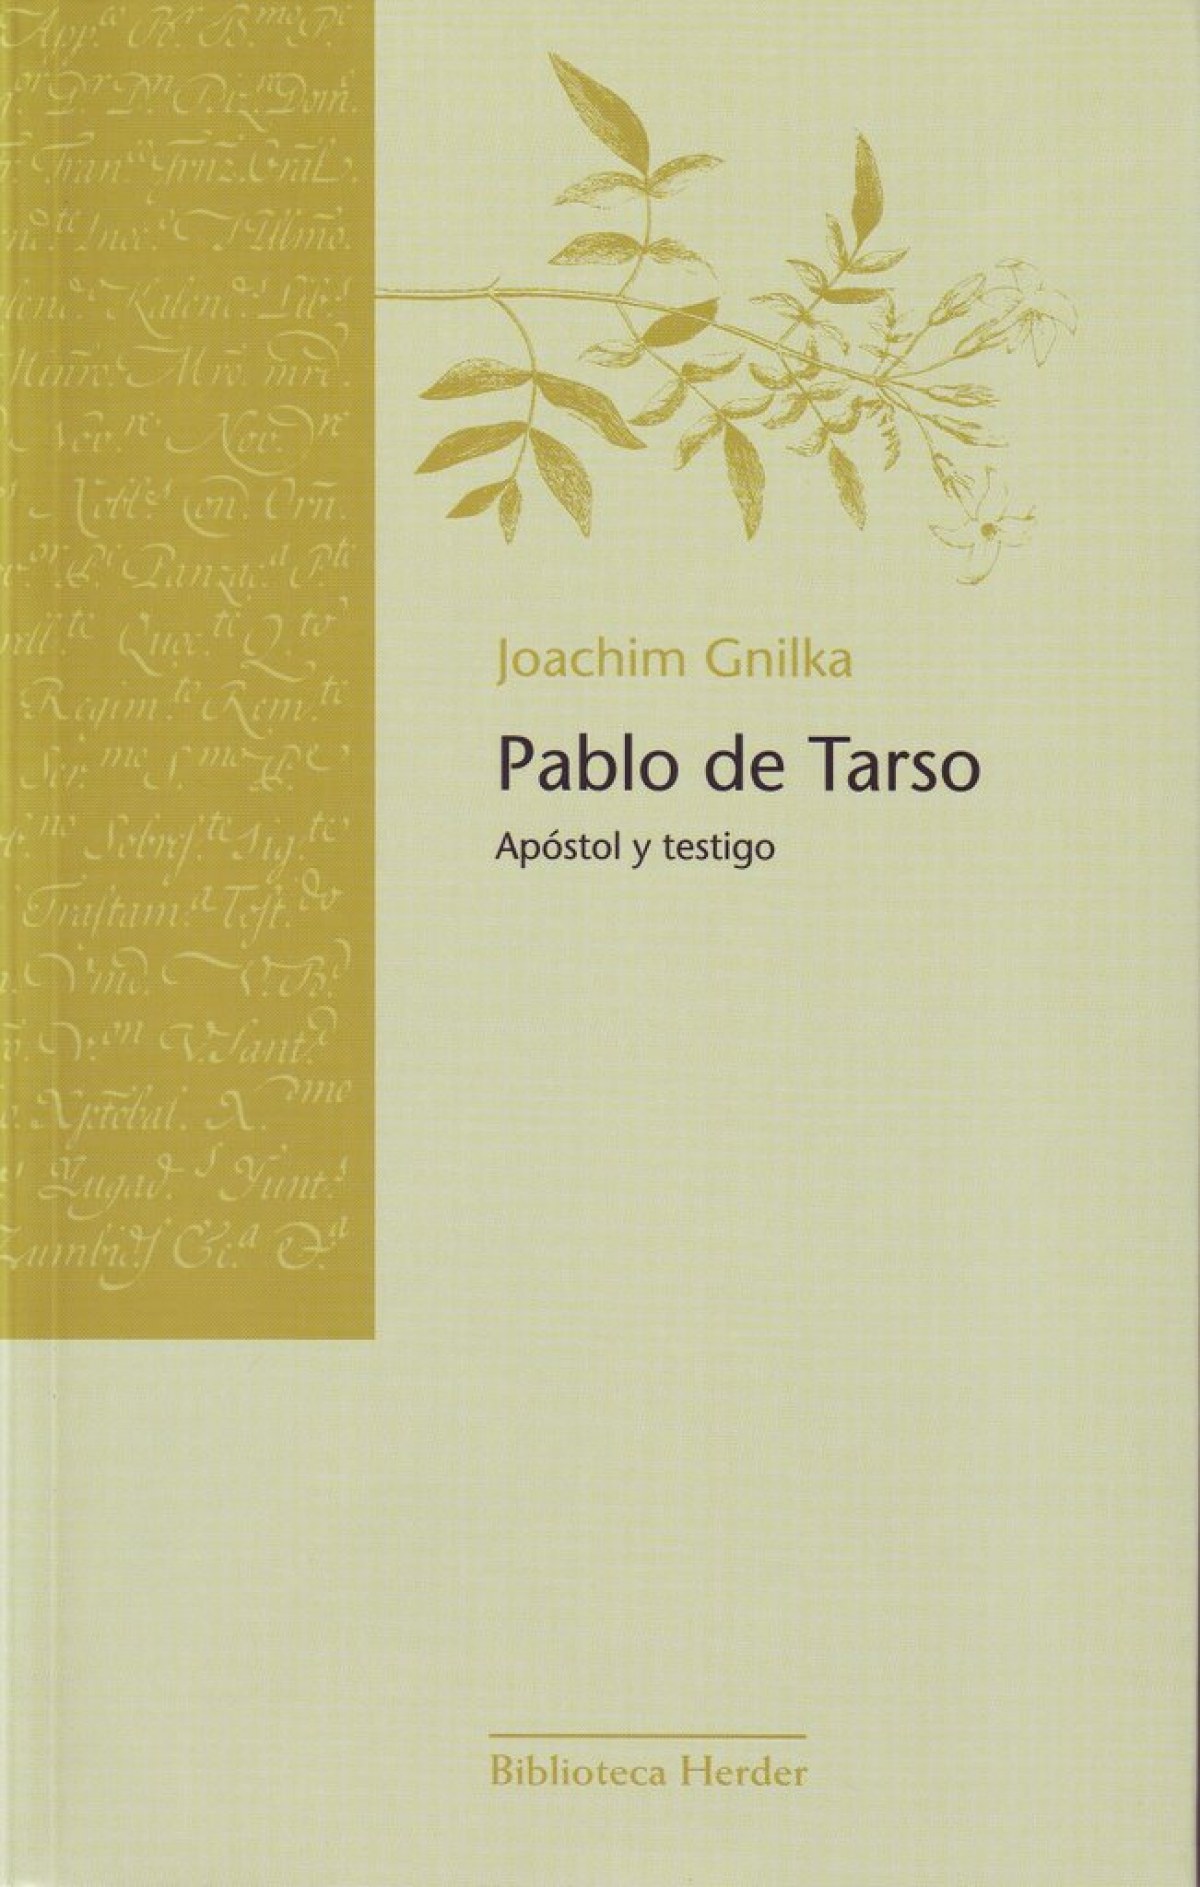 Pablo de Tarso Apóstol y testigo - Gnilka, Joachim